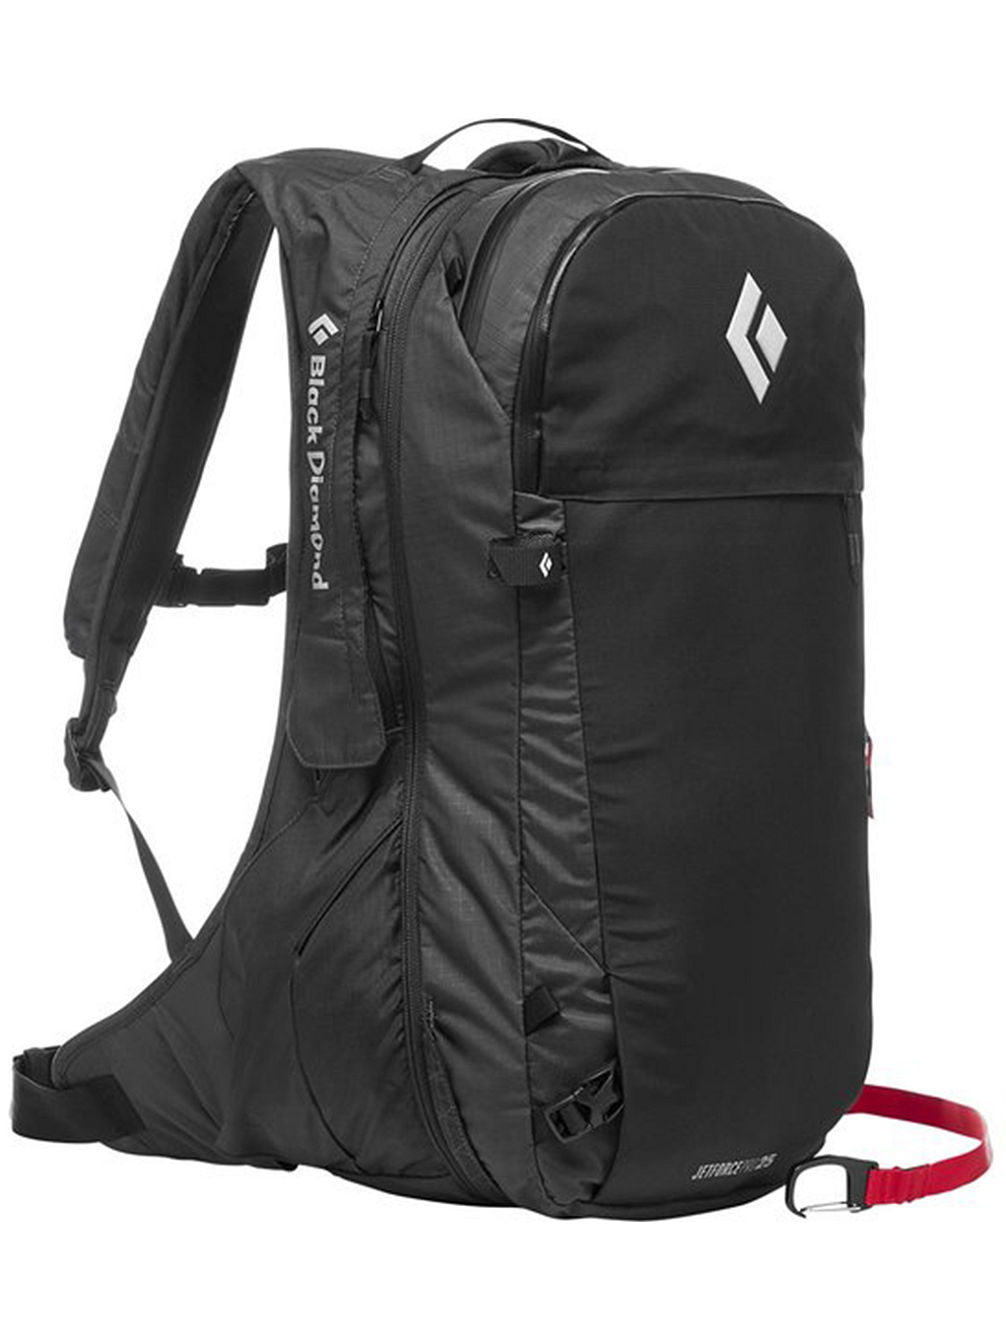 Jetforce Pro Pack 25L Backpack